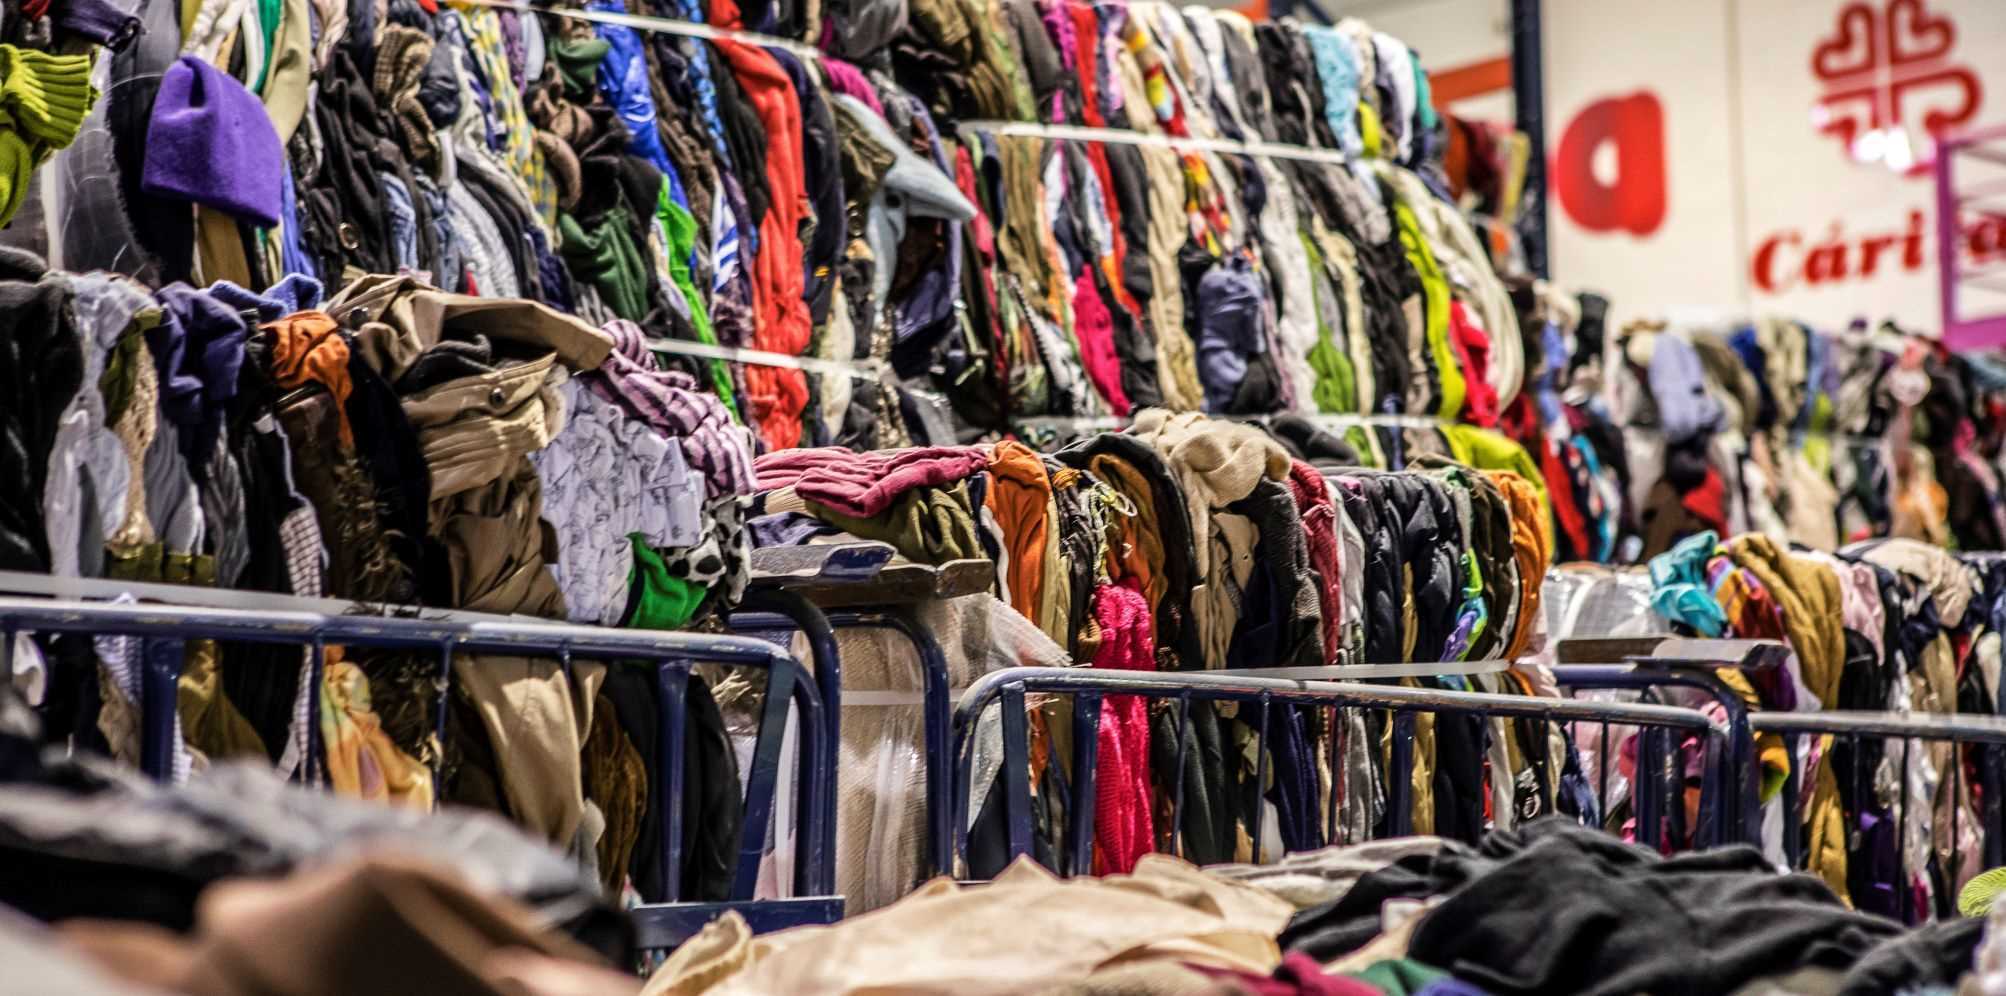 Nuevo estudio sobre la recogida de ropa usada en España. “Análisis de la recogida la ropa usada en España” Diocesana de Oviedo